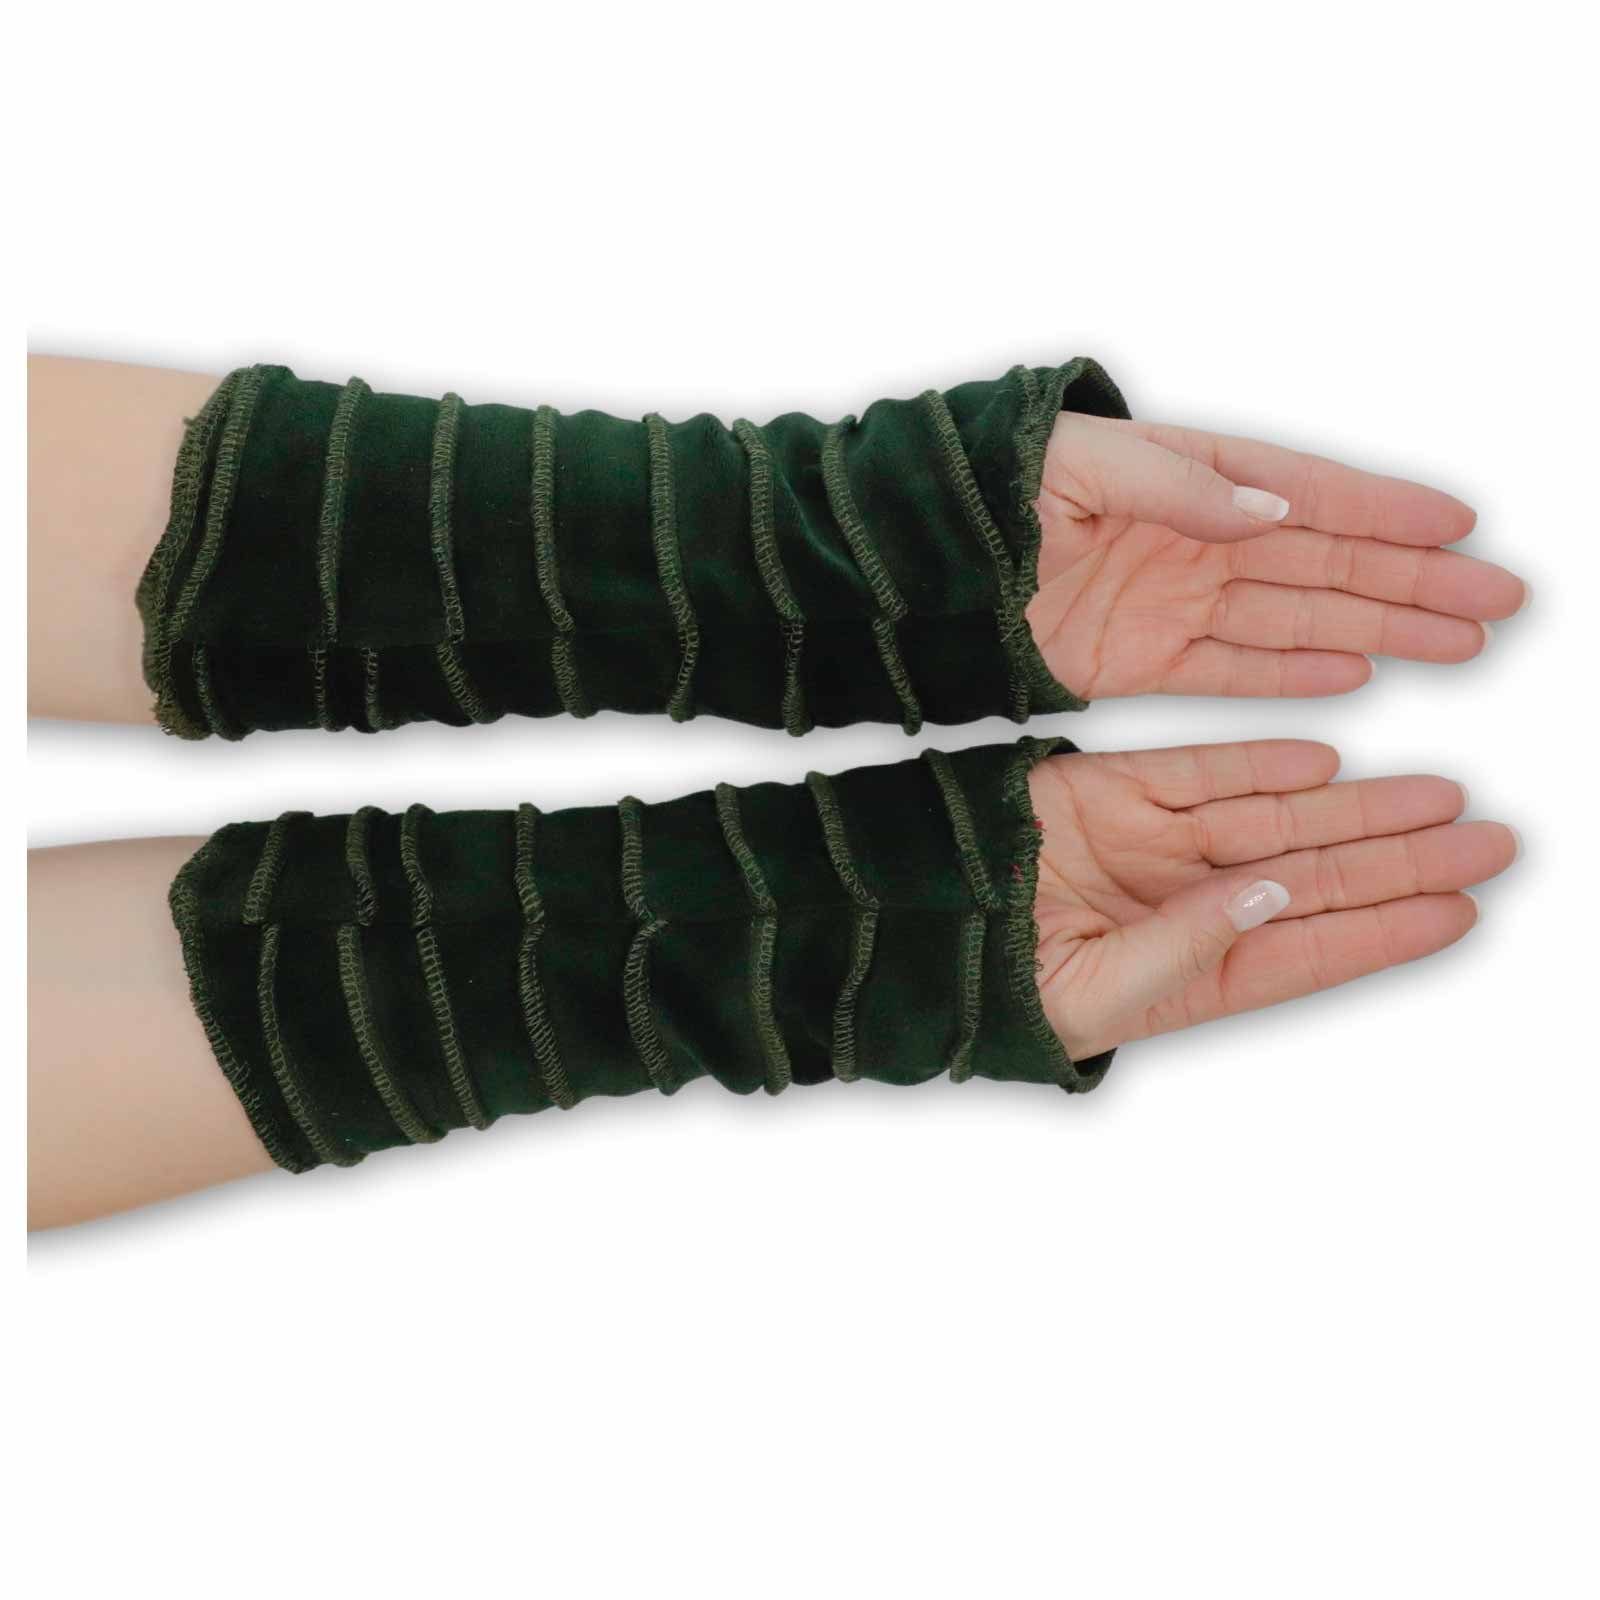 Samt Armstulpen und Handschuhe Armstulpen KUNST Handwärmer Grün Stulpen MAGIE UND Kunst Magie